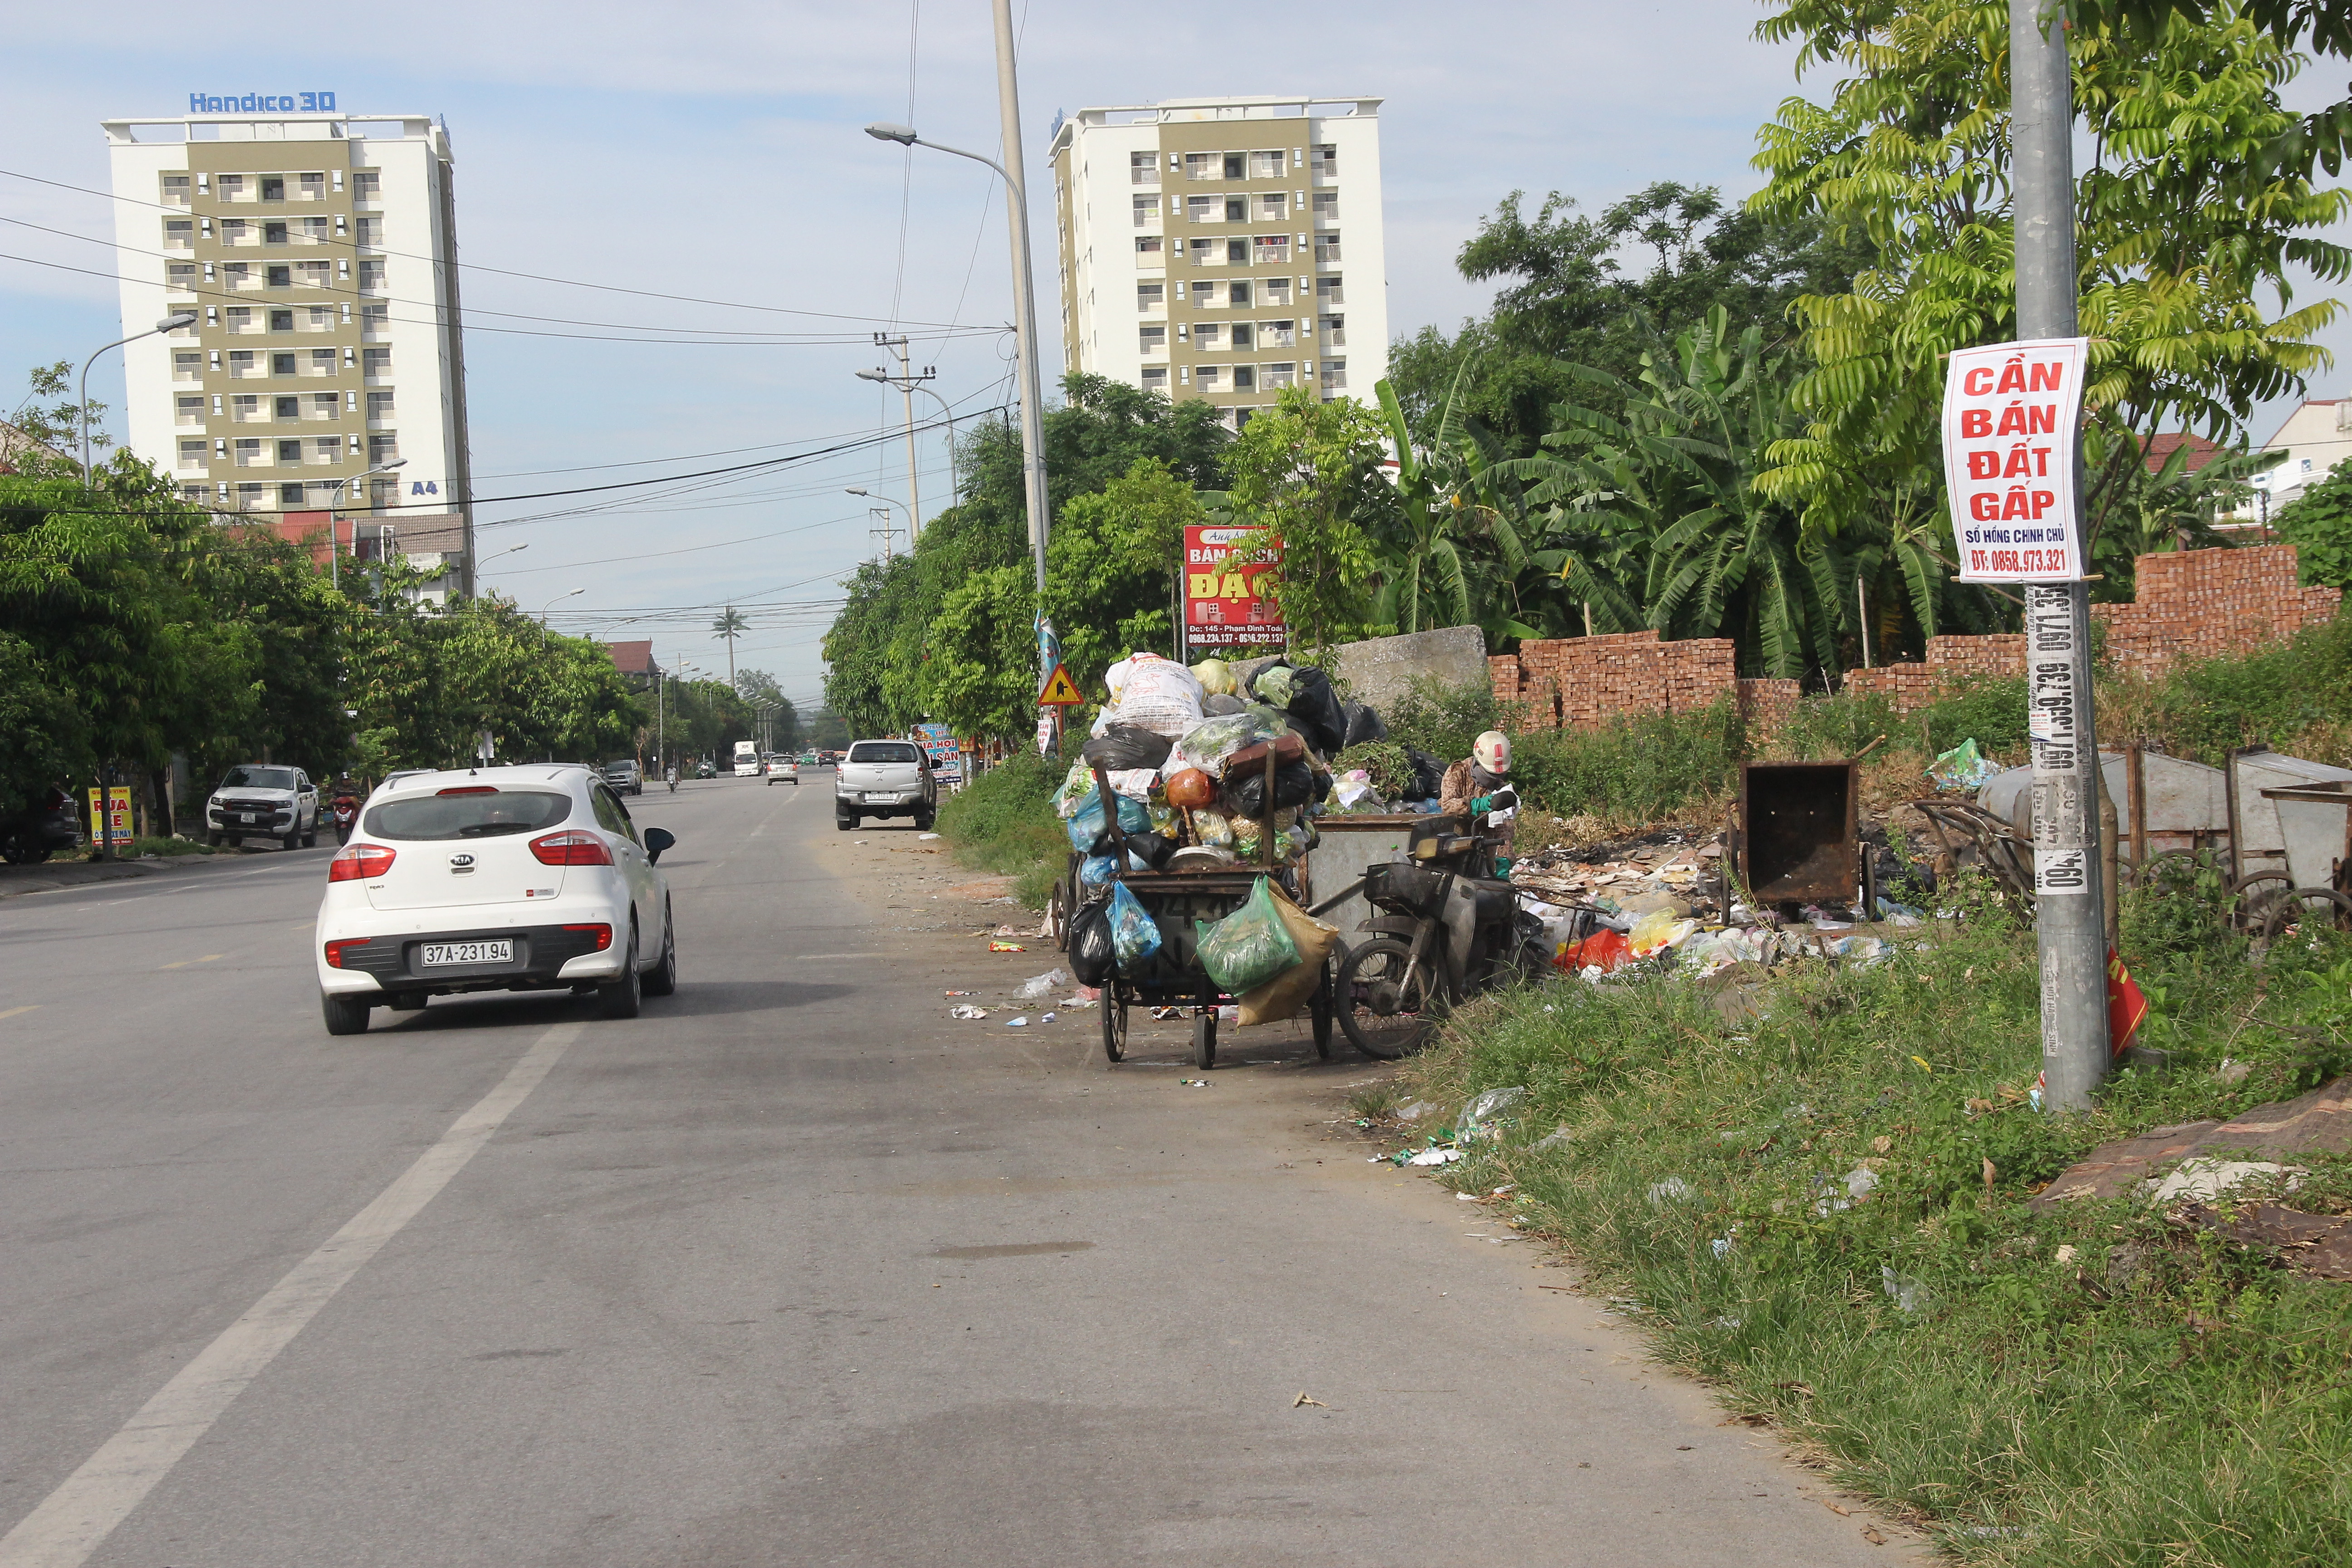 Bất cập trong bố trí các điểm tập kết rác trên nhiều tuyến đường thành phố, ảnh hưởng đến môi trường. Ảnh Mai Hoa.